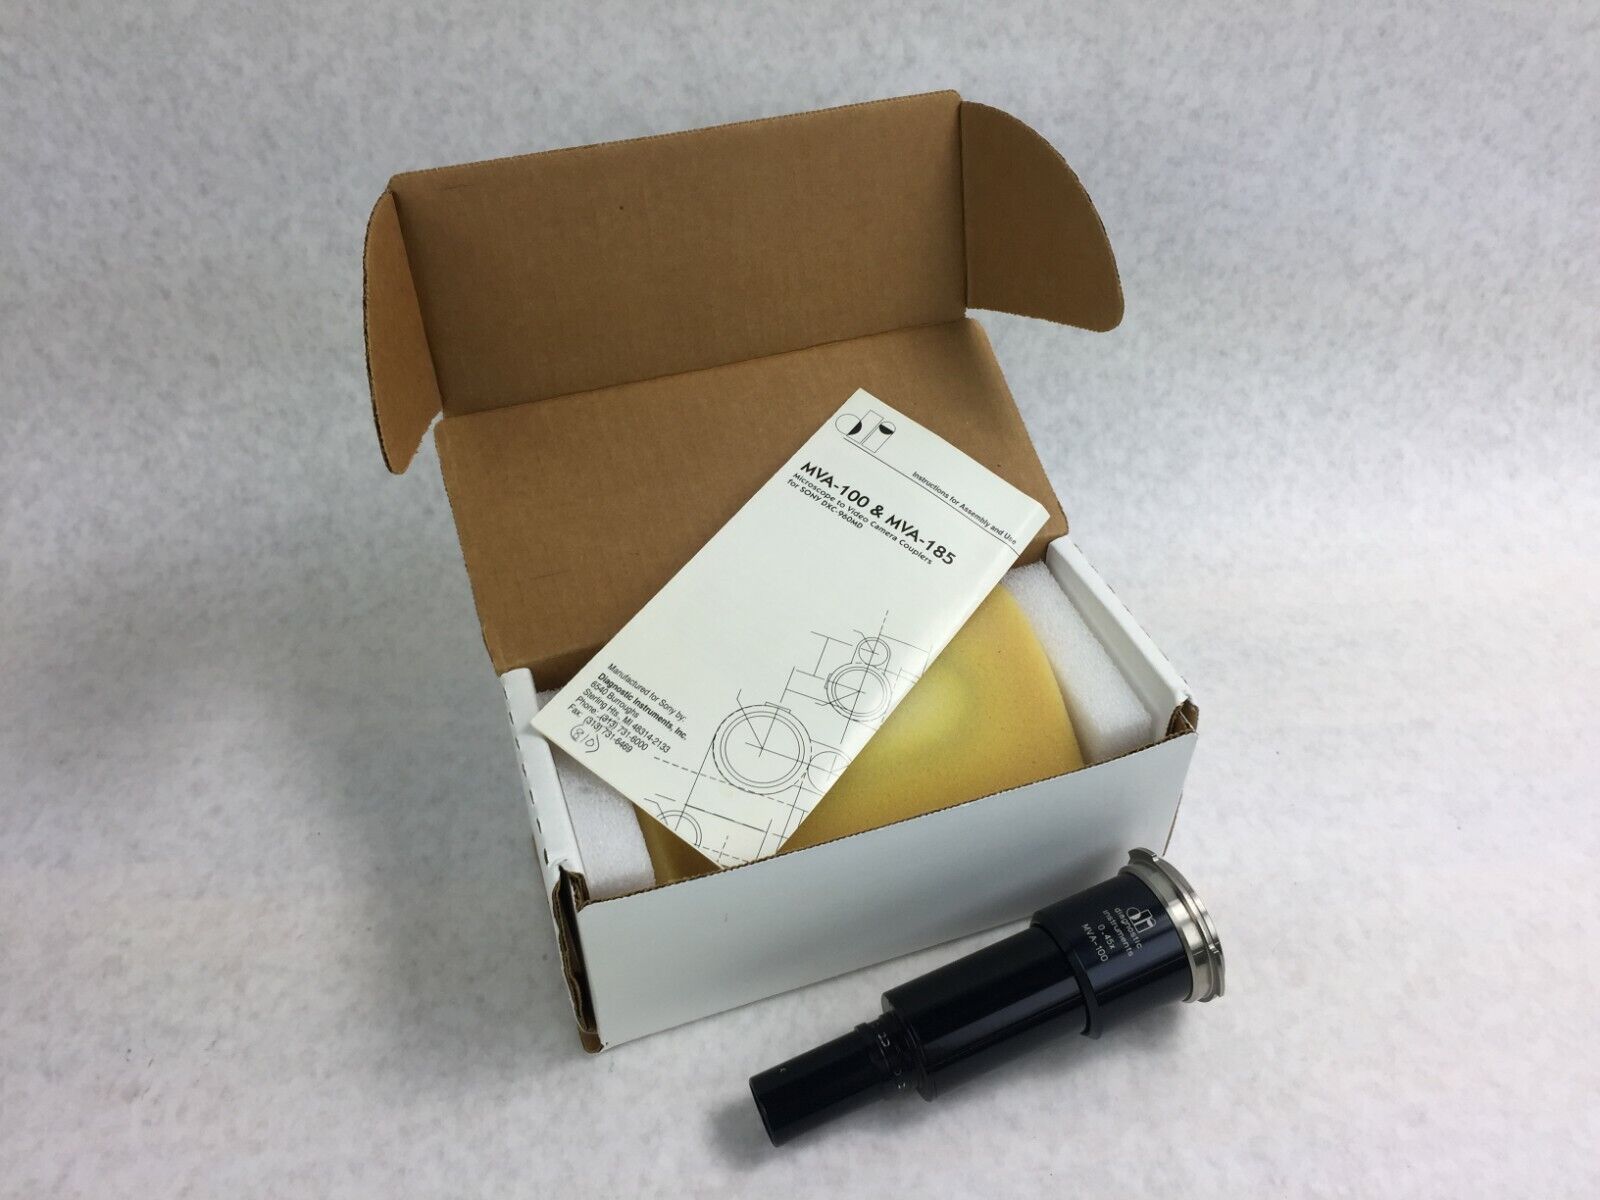 Diagnostics Instruments 0.45x MVA-100 Microscope to Video Camera Coupler in Box